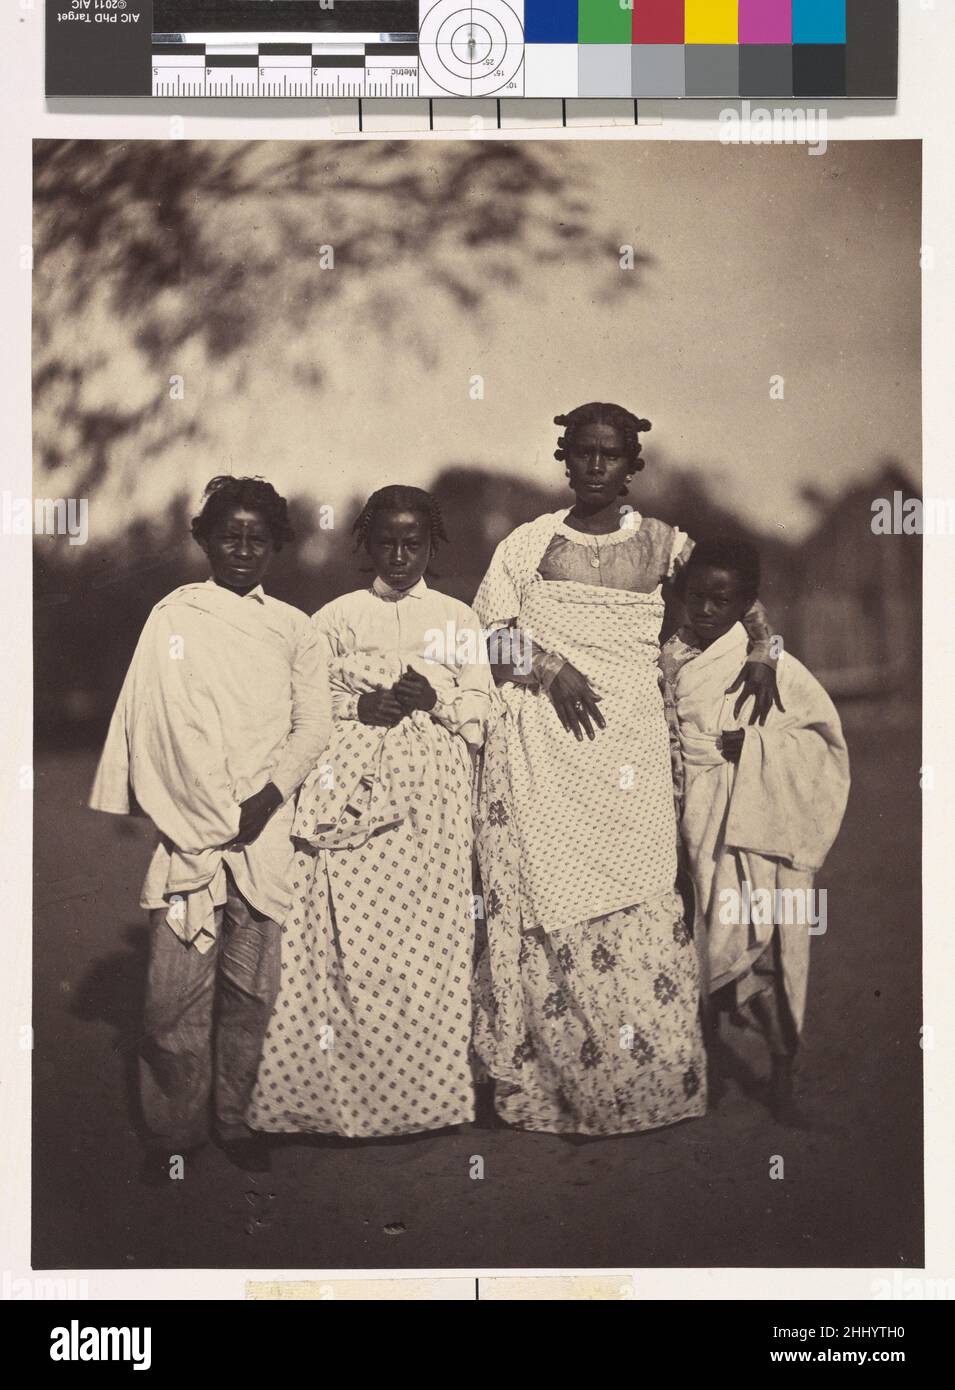 [Groupe familial] 1863 désiré Charnay Français en raison du manque de coopération qu'il a reçu du gouvernement, dirigé par le Hova, le groupe ethnique le plus puissant de Madagascar, l'exploration de l'île par Charnay se limitait à quelques excursions autour du port de Tamatave, sur la côte est.Cette photographie d'une famille de Betsimitsaraka a été prise sur Nossi-Malaza, l'île des délices sur le lac Nossi-be, un lagon au sud de Tamatave.Charnay a noté l'accueil chaleureux qu'il y a reçu, la beauté lantée des femmes, et l'air général de l'abondance.Il a décrit les cheveux tressés des femmes et leur gracieuse Banque D'Images